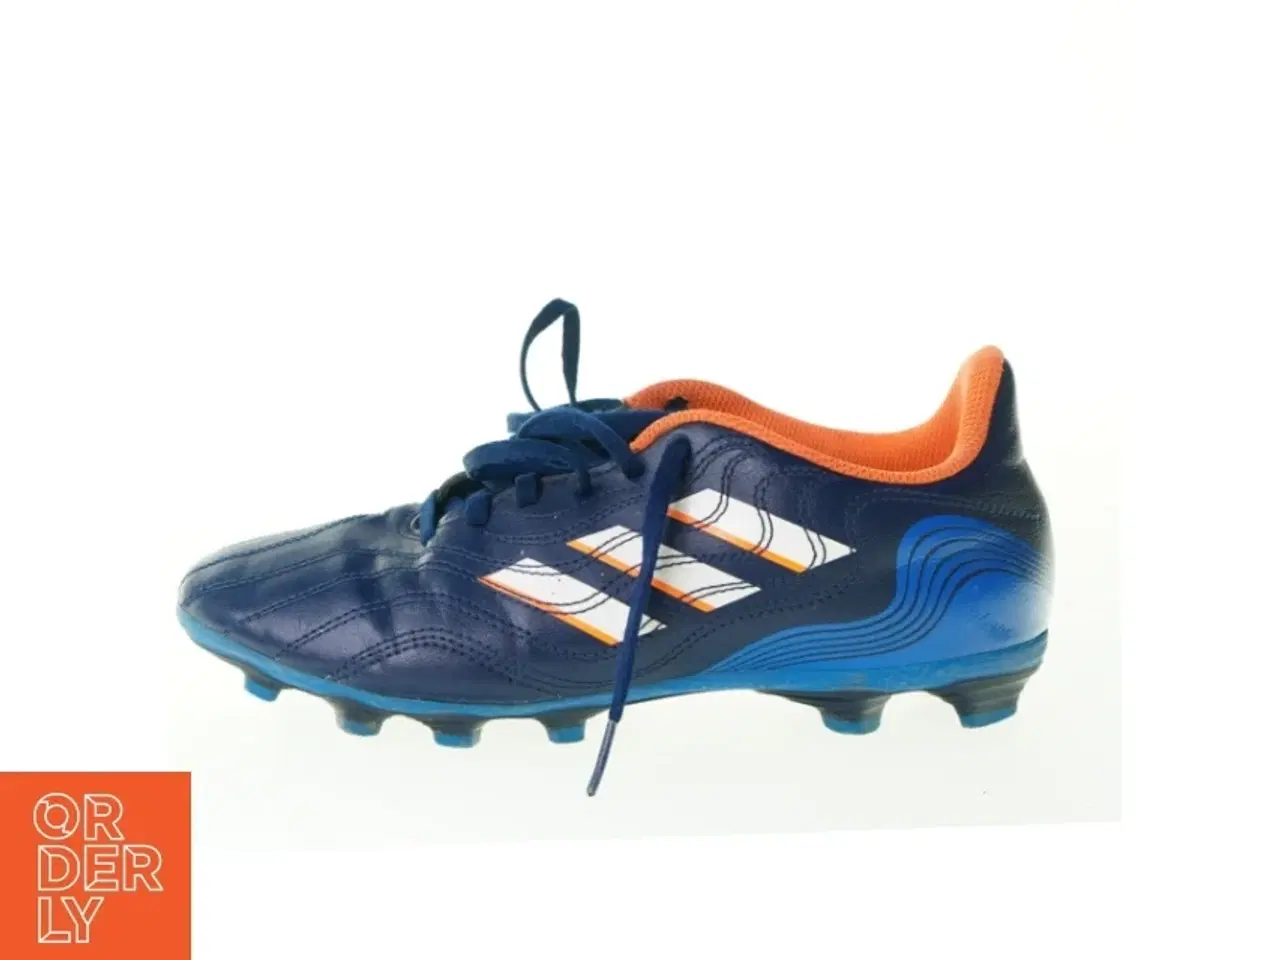 Billede 1 - Fodboldstøvler fra Adidas (str. 25 cm)